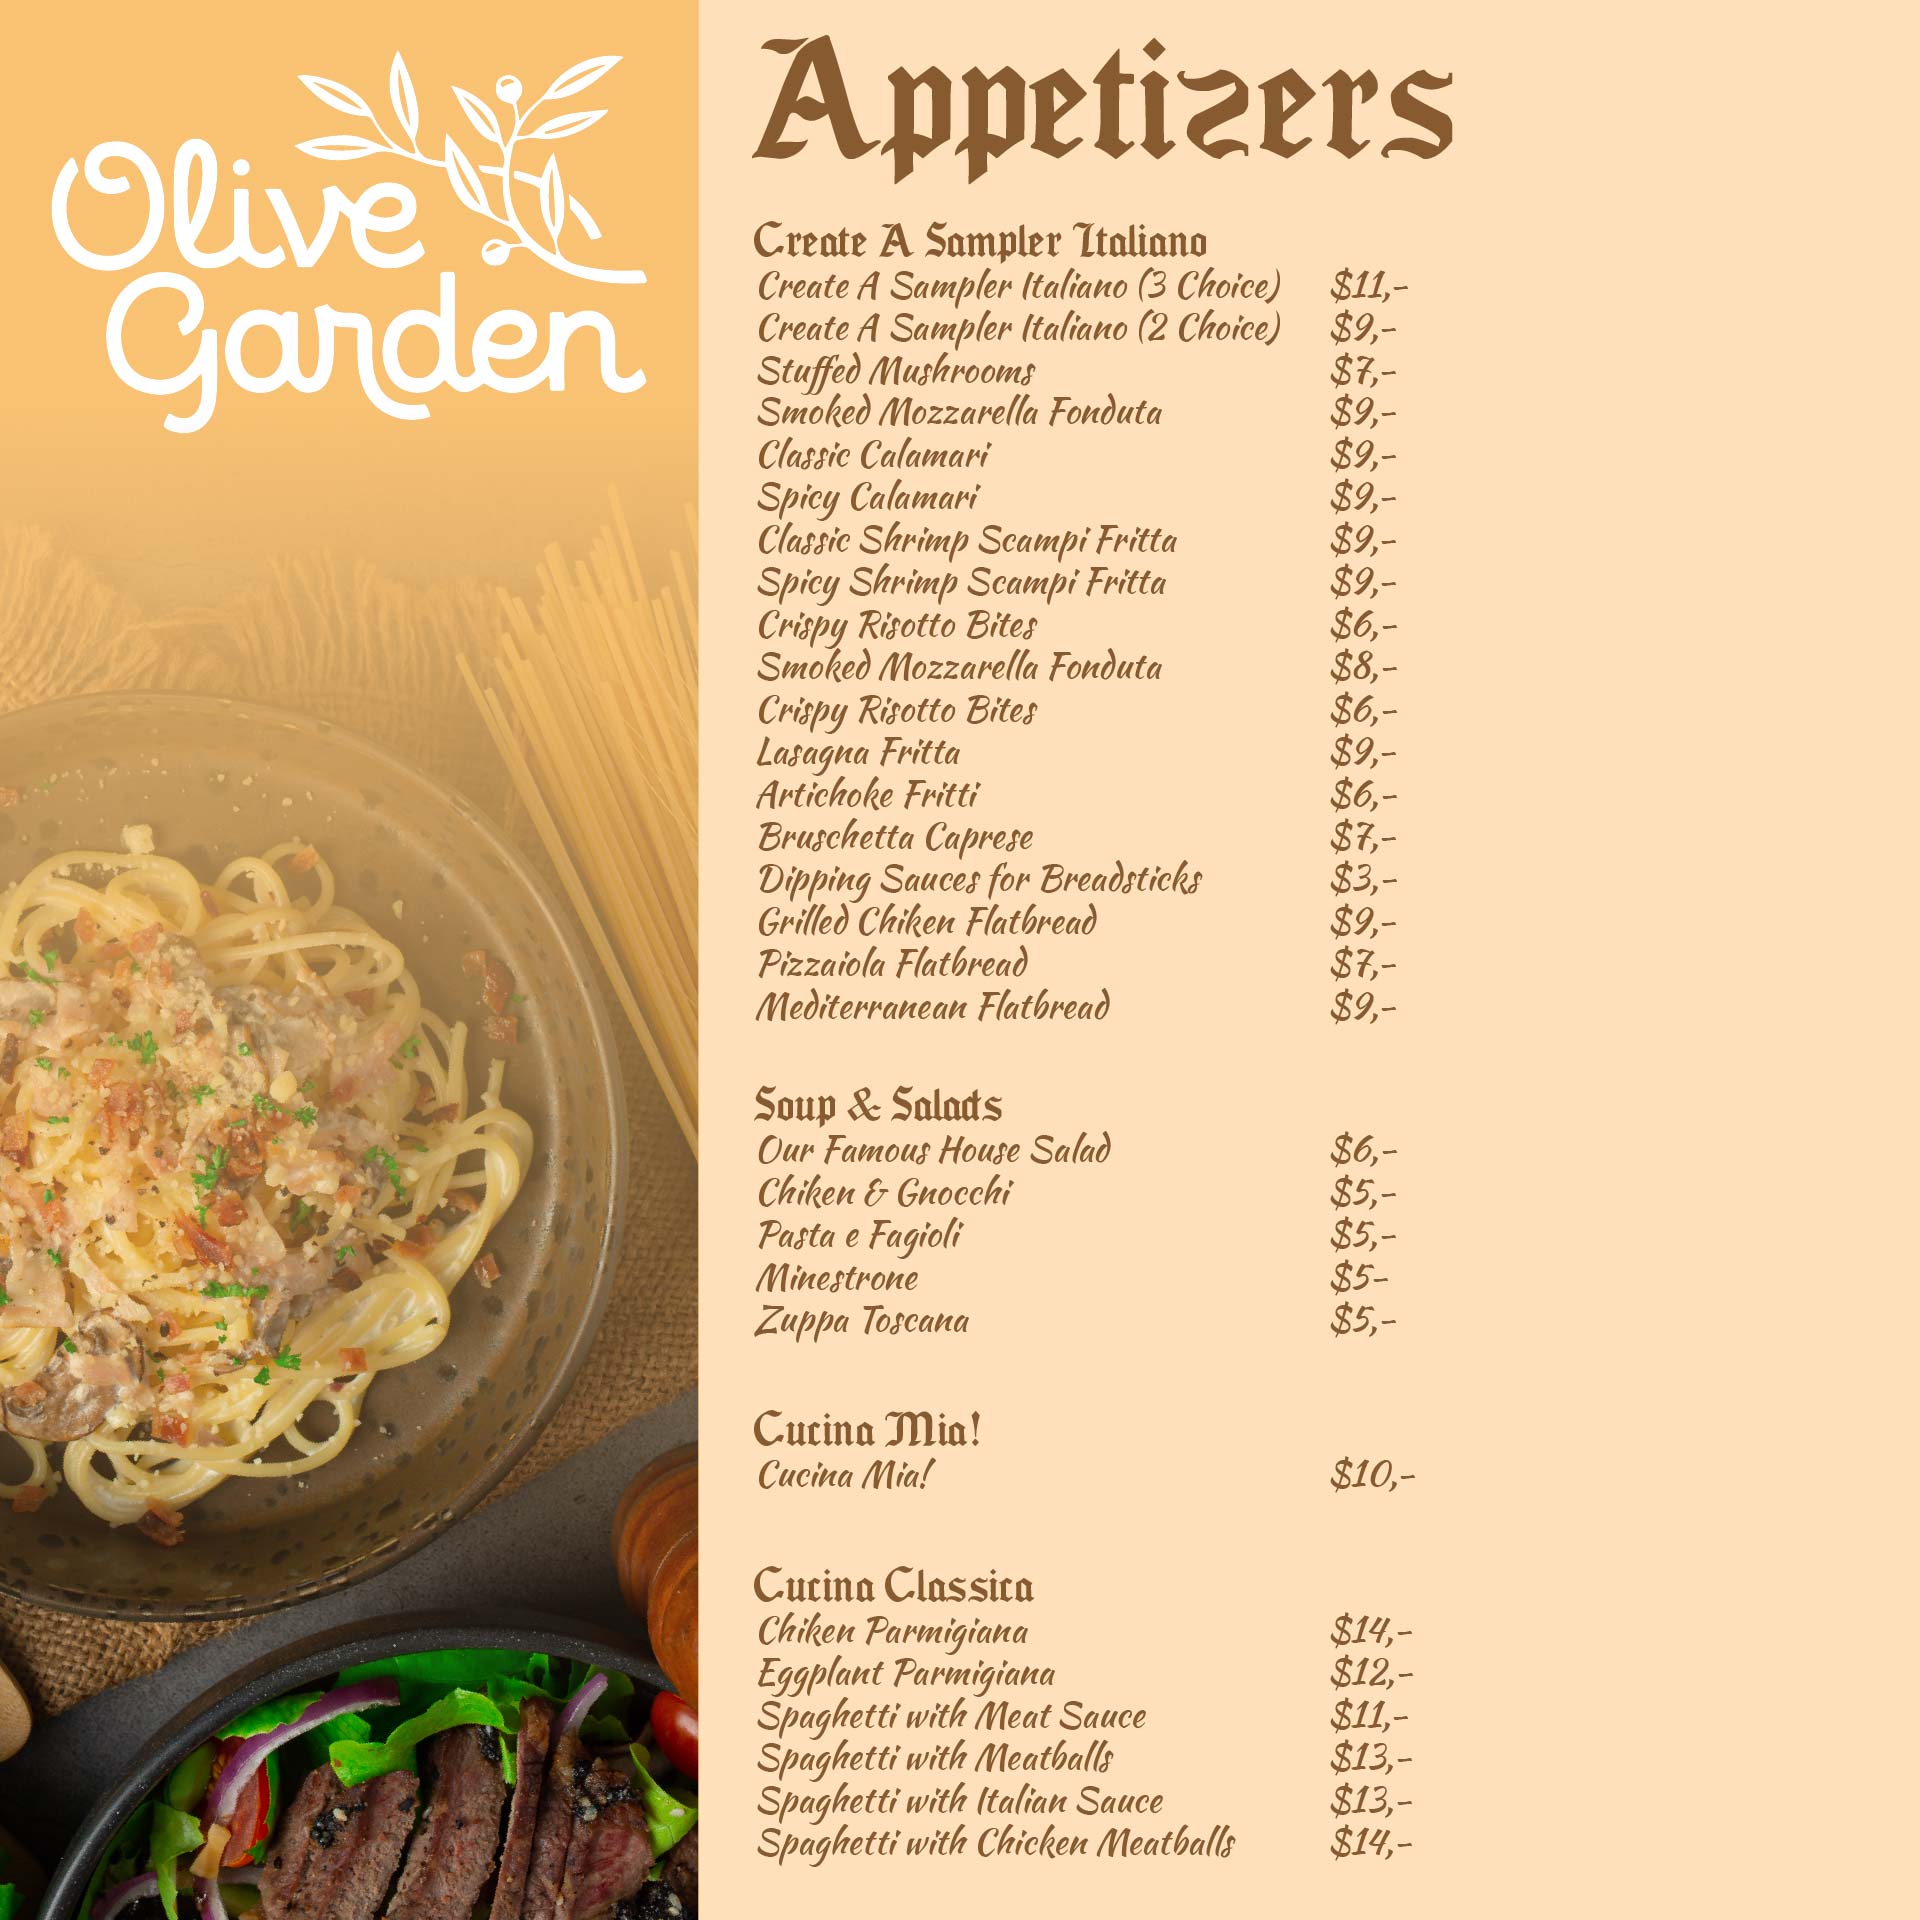 7 Best Images Of Olive Garden Menu Printable Out Olive Garden